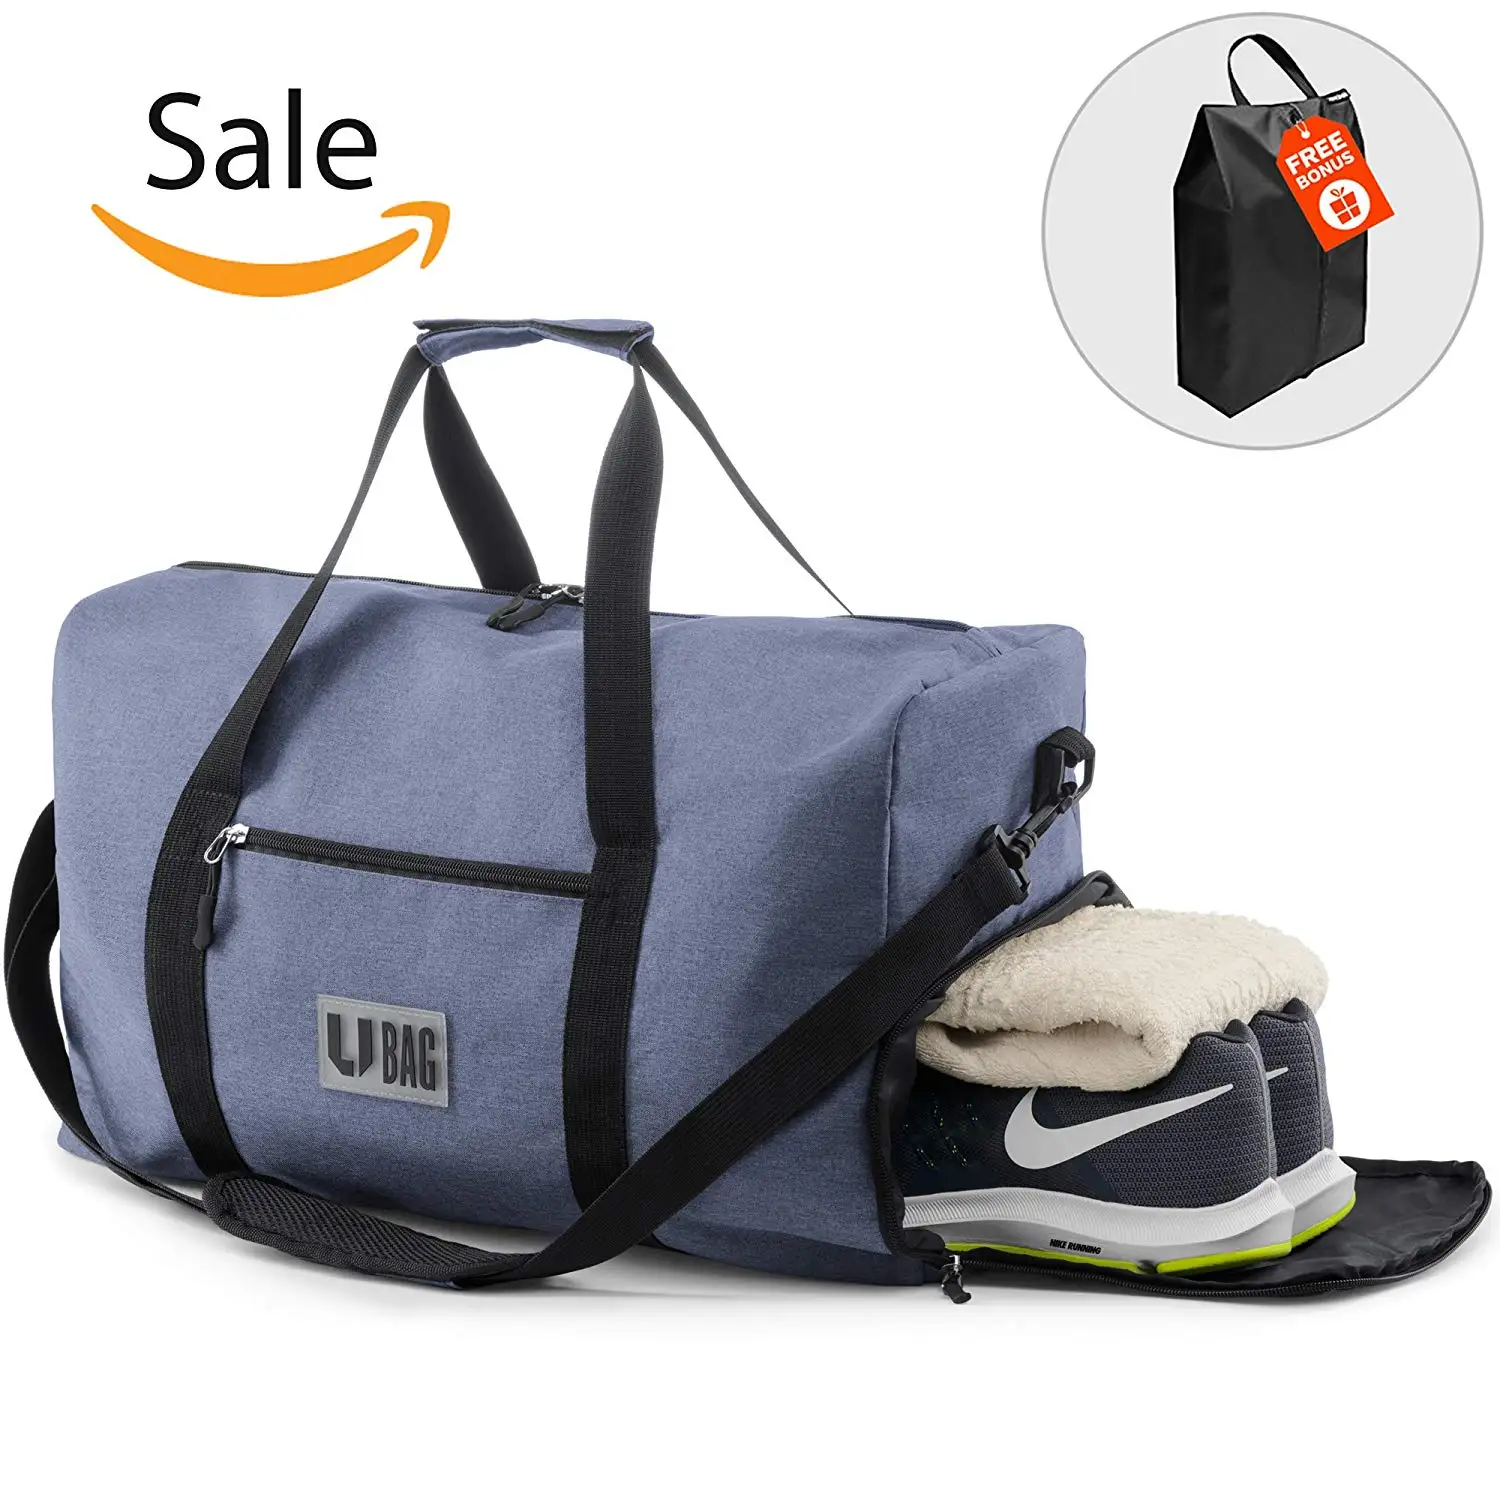 Cheap Duffle Weekender Bag, find Duffle Weekender Bag deals on line at